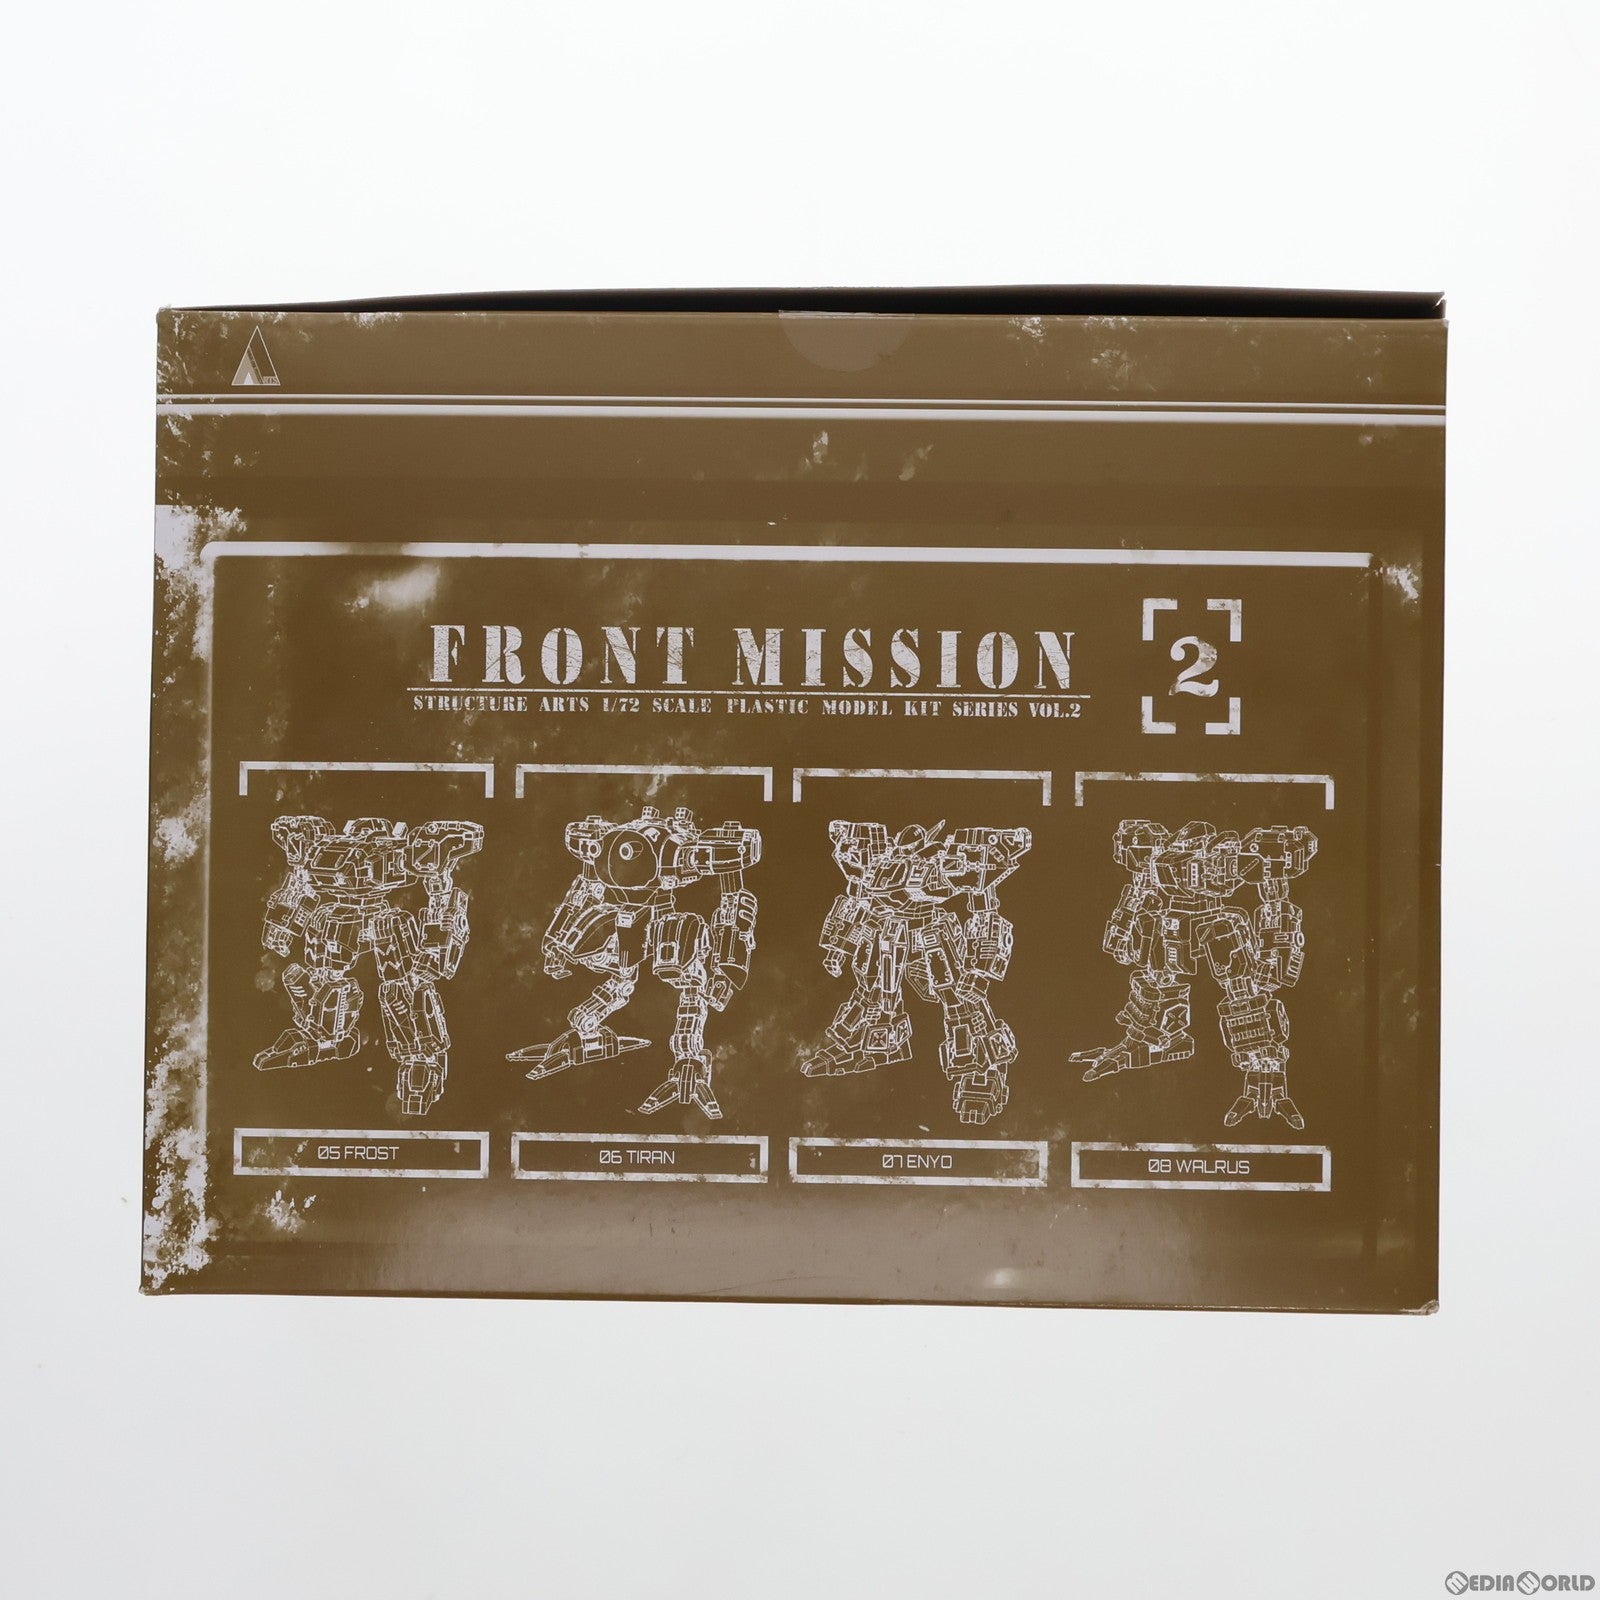 【中古即納】[PTM]フロントミッション ストラクチャーアーツ 1/72 スケール プラスティック モデルキット シリーズ Vol.2 全4種BOX FRONT MISSION プラモデル スクウェア・エニックス(20211231)